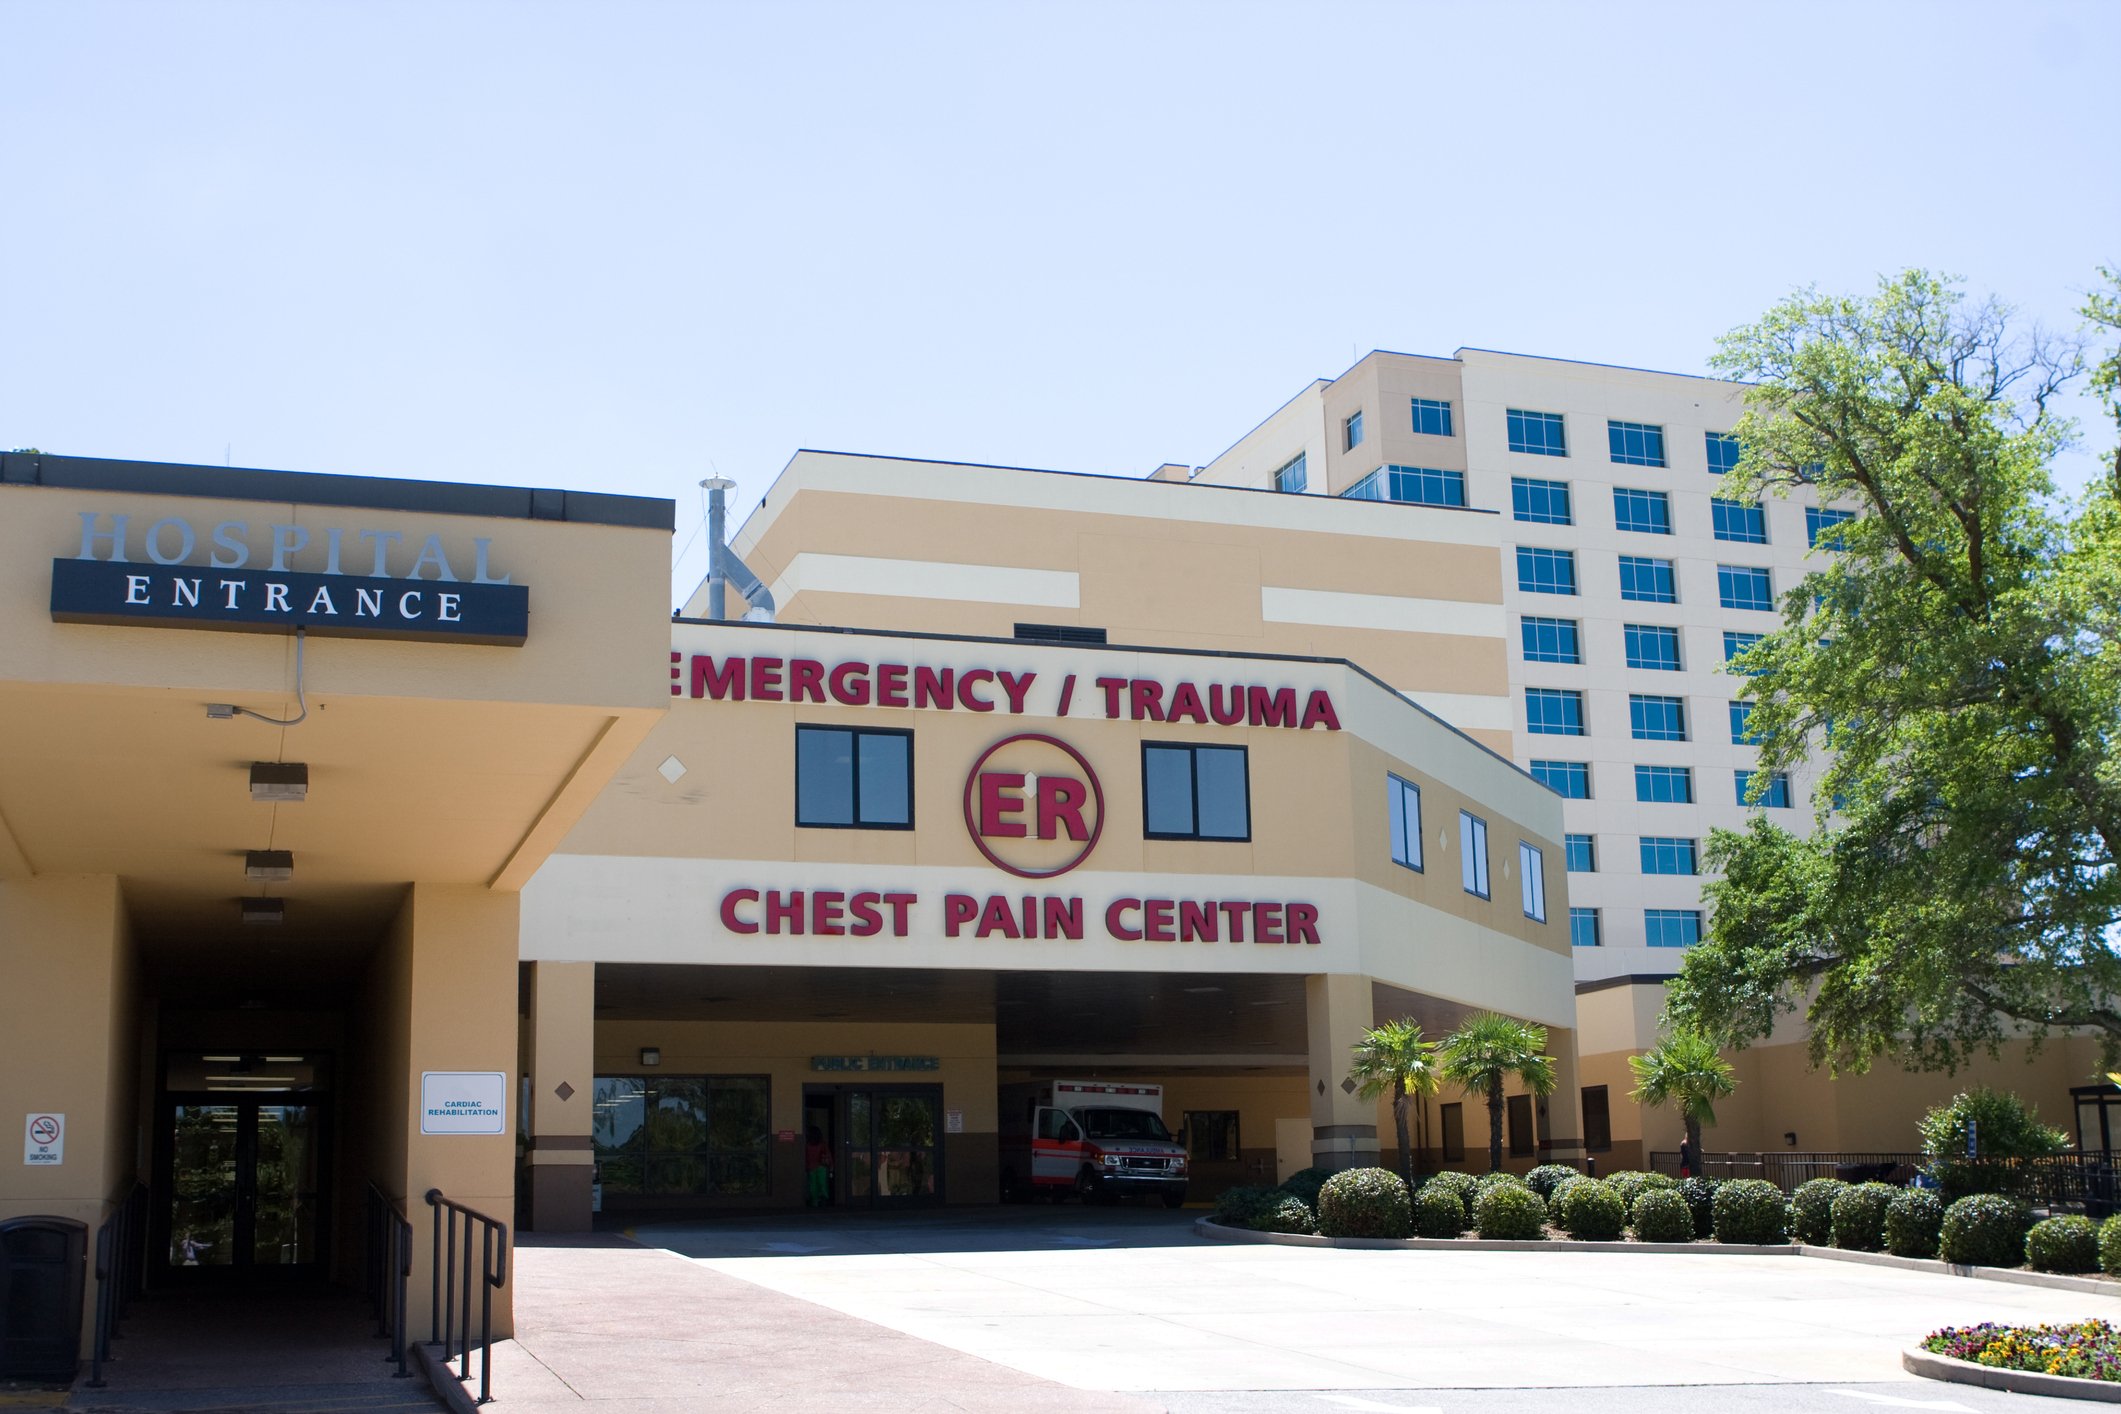 Hospital entrance with emergencytrauma sign